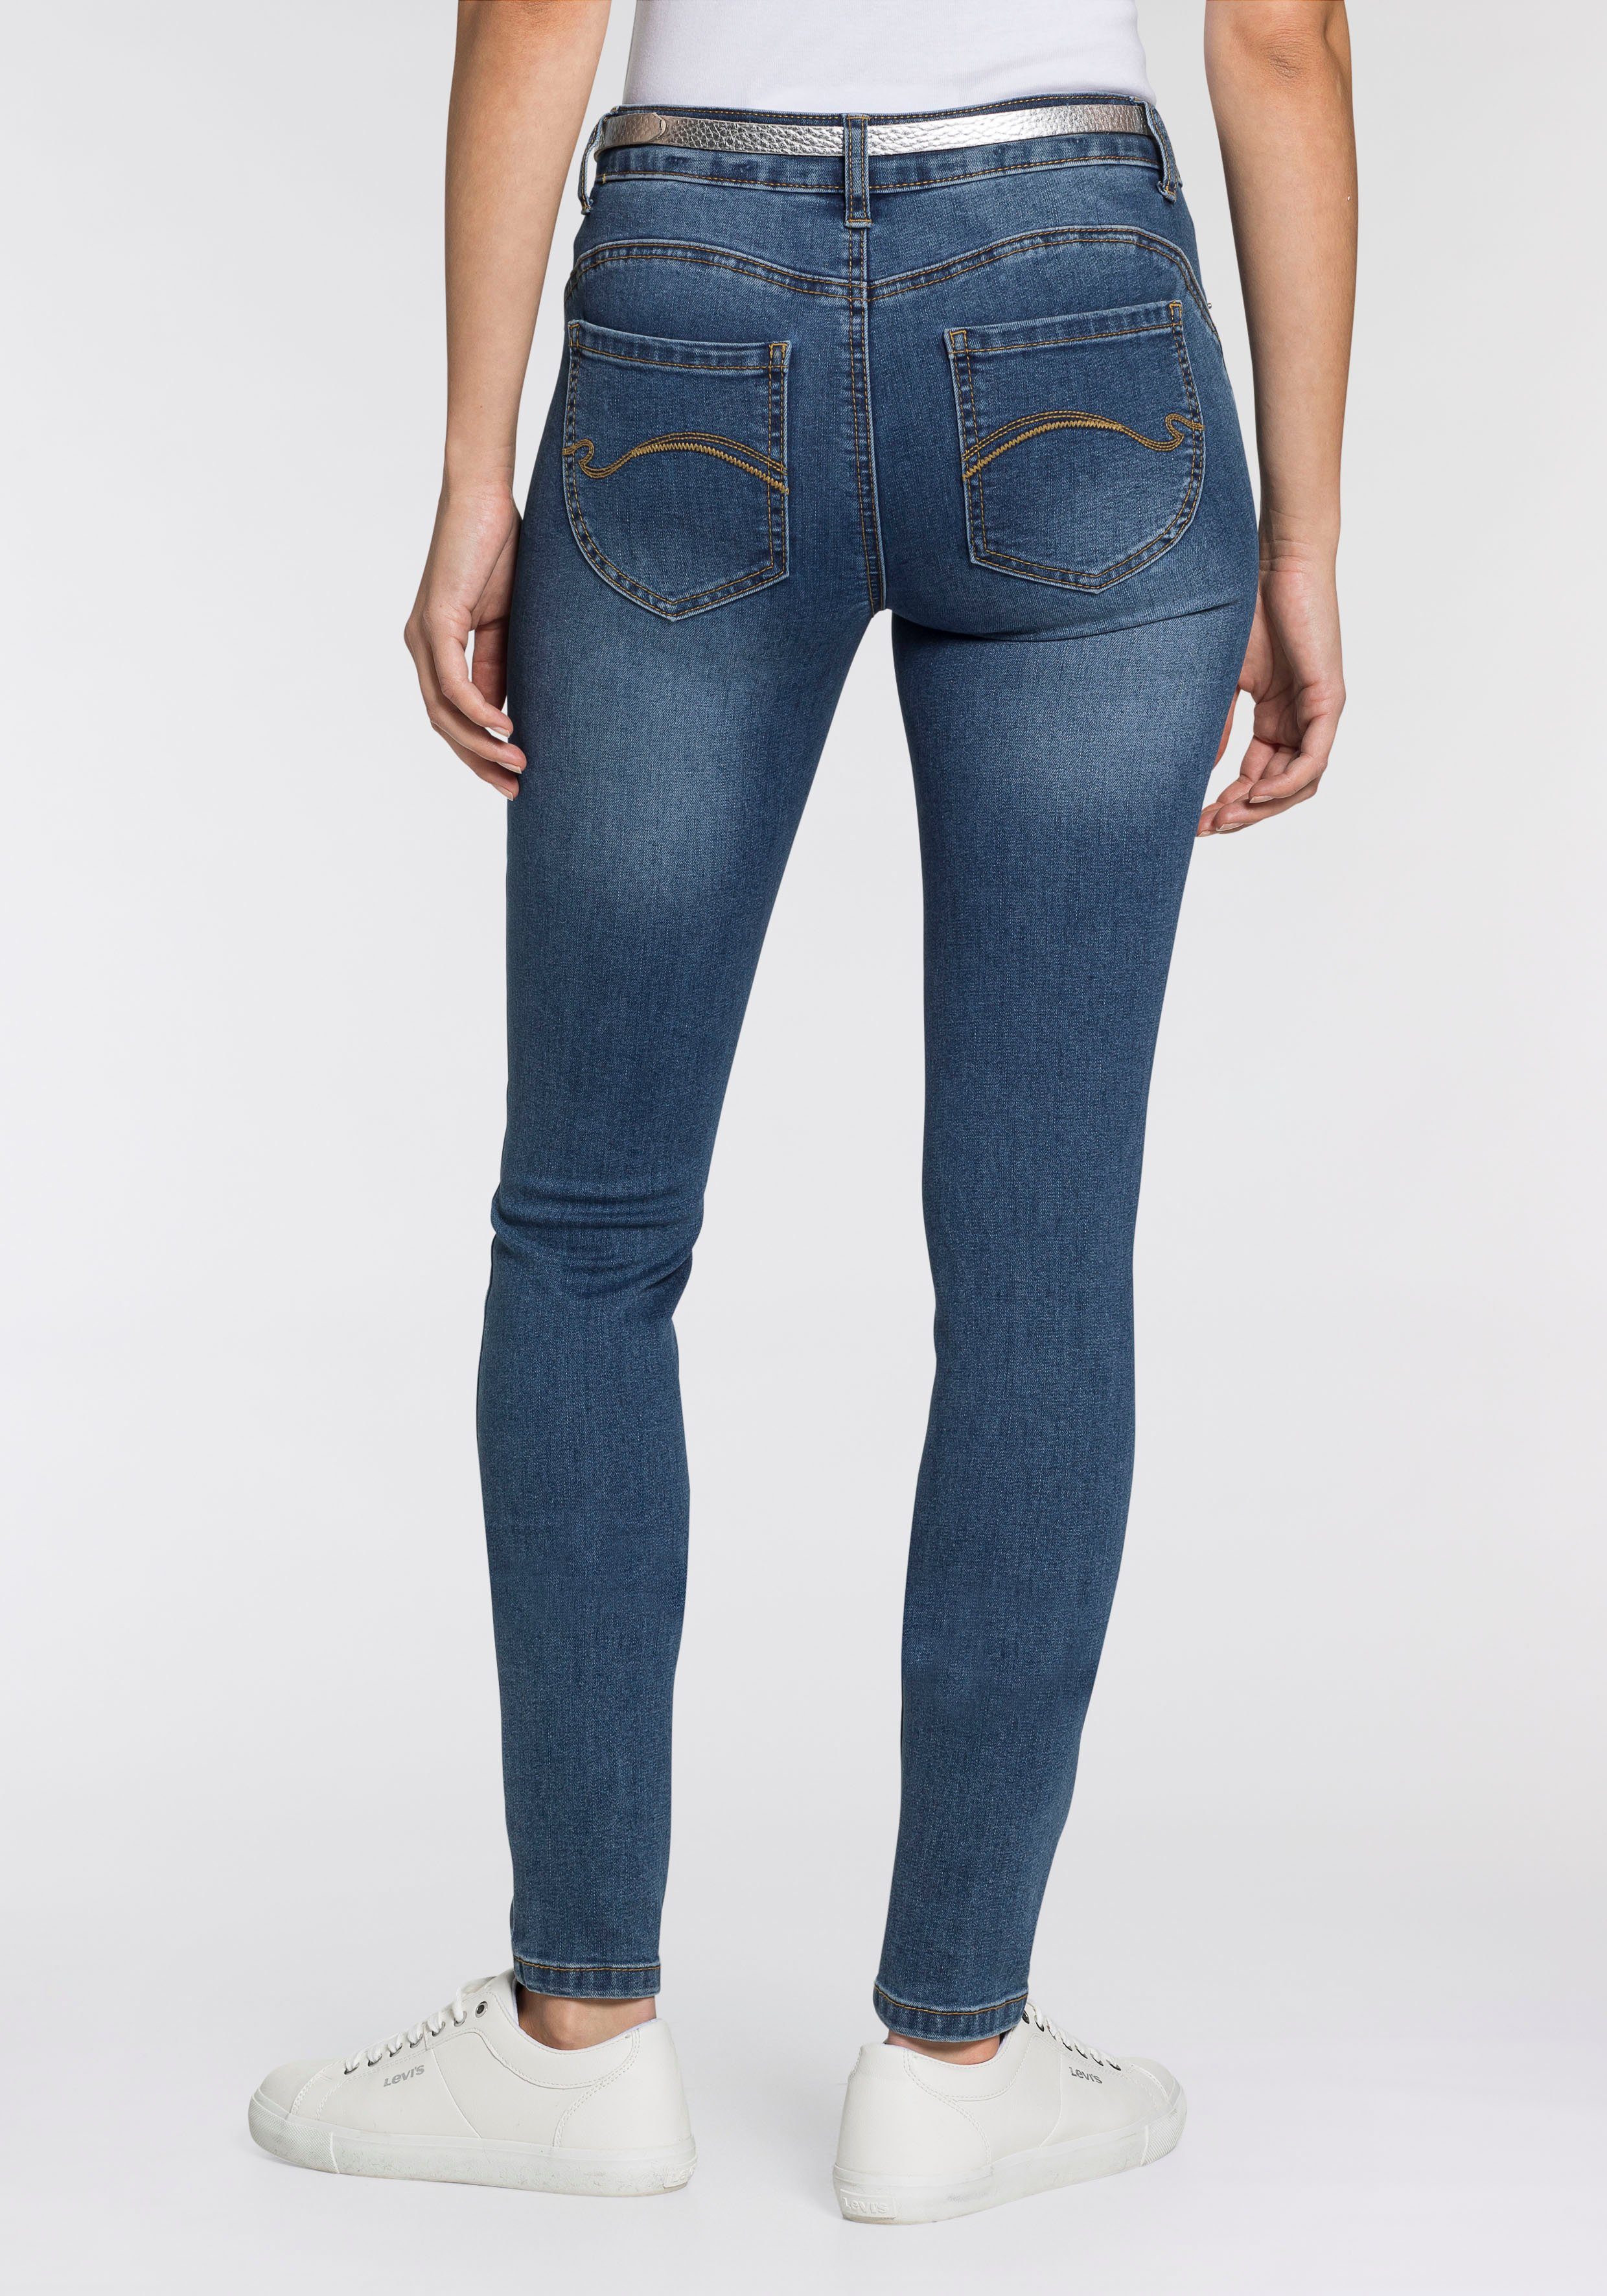 KangaROOS 5-Pocket-Jeans PUSH-UP SKINNY mit Shaping-Effekt